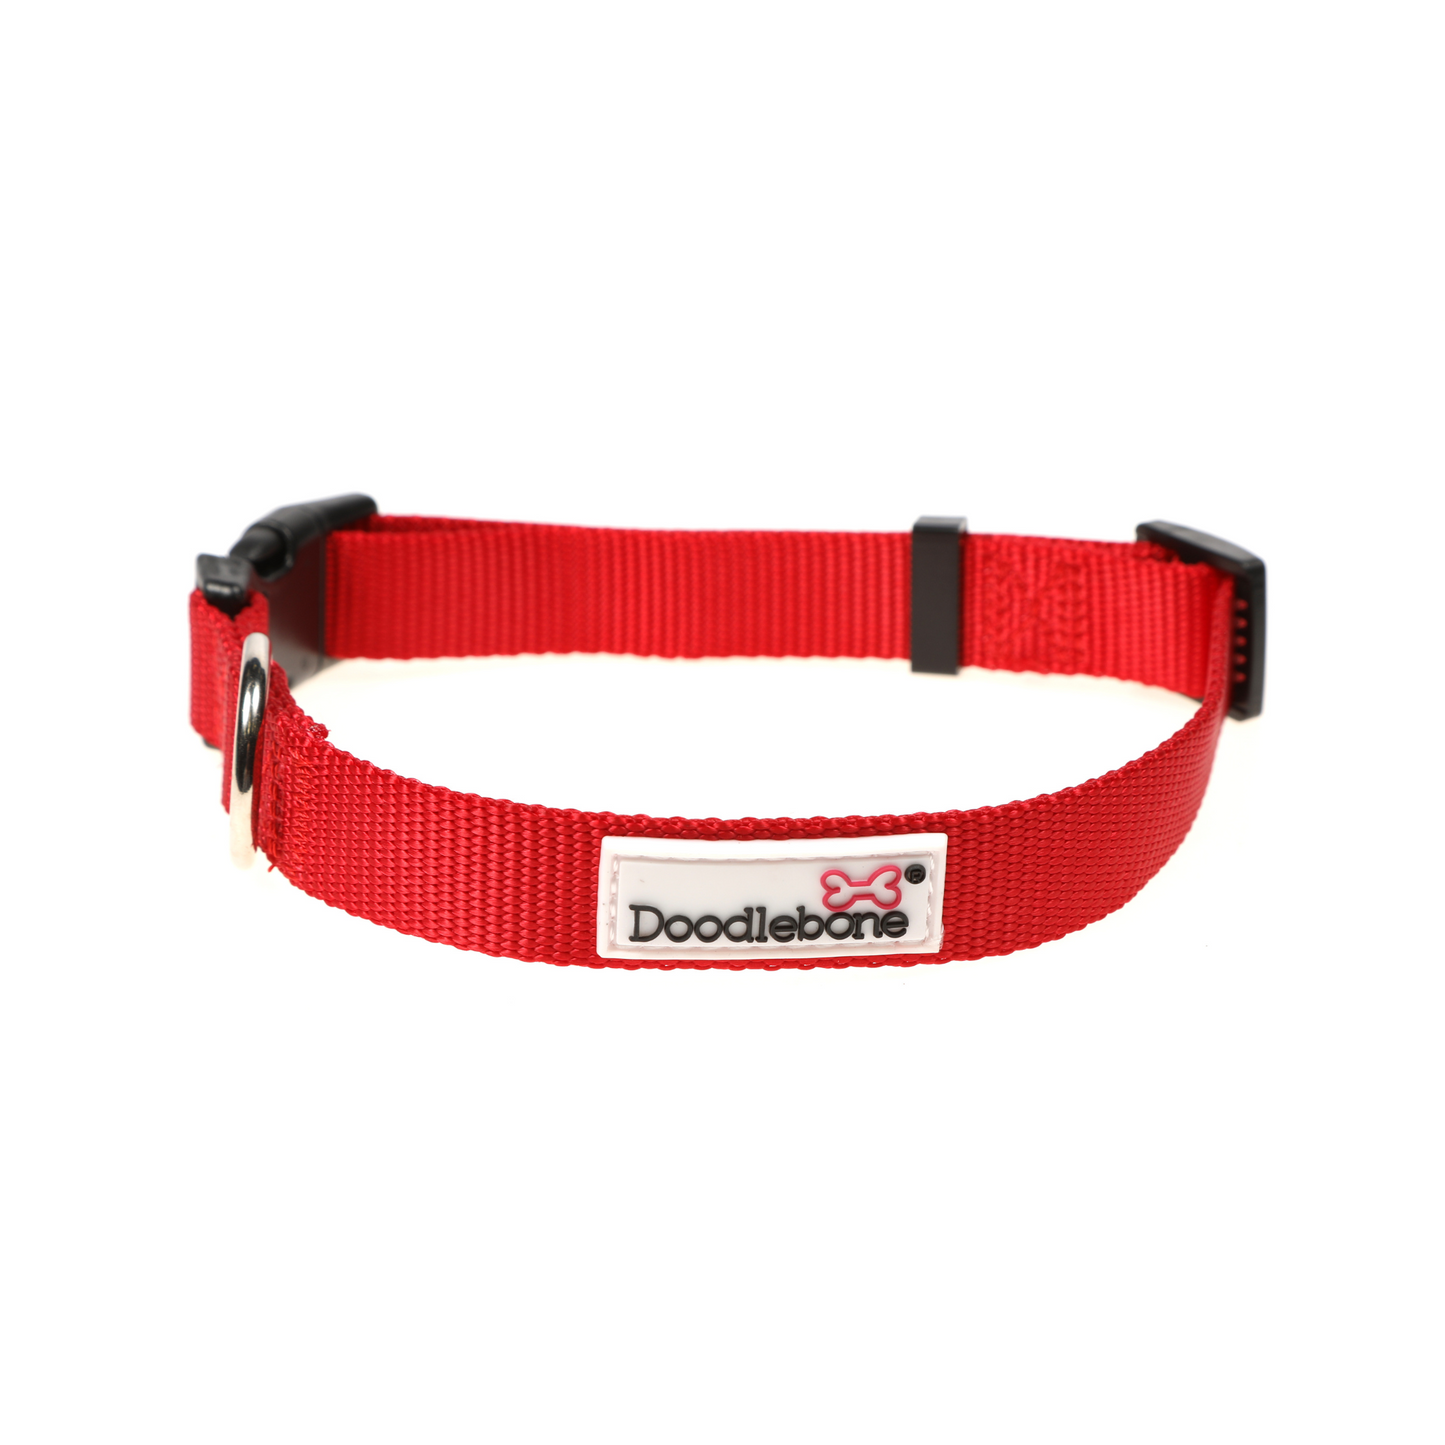 Doodlebone Originals Airmesh Bundle Set Dog Lead, Collar & Harness Ruby Red